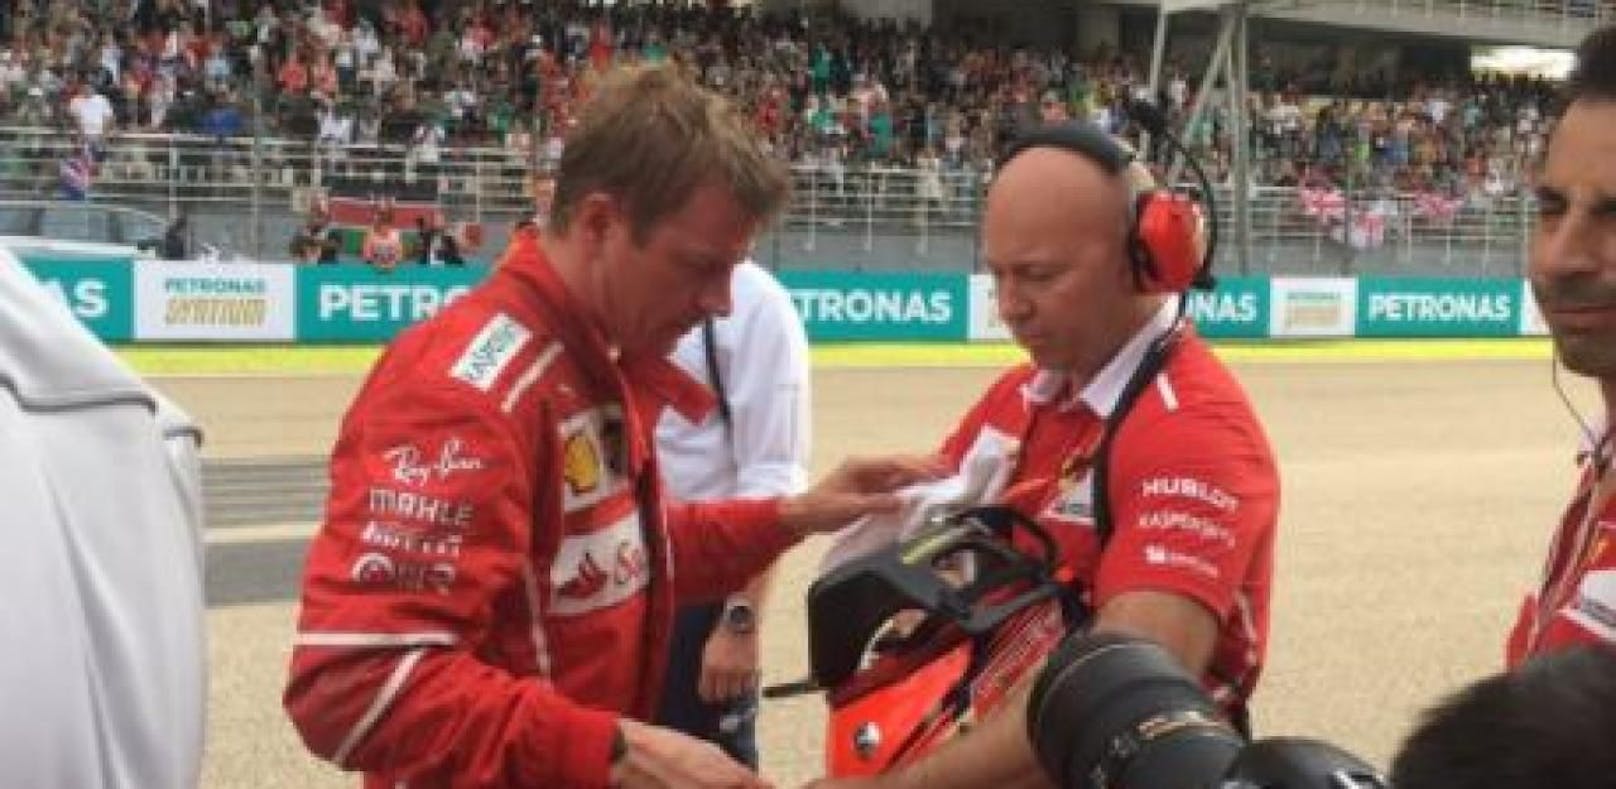 Für Kimi Räikkönen setzte es bereits vor dem Start das bittere Aus